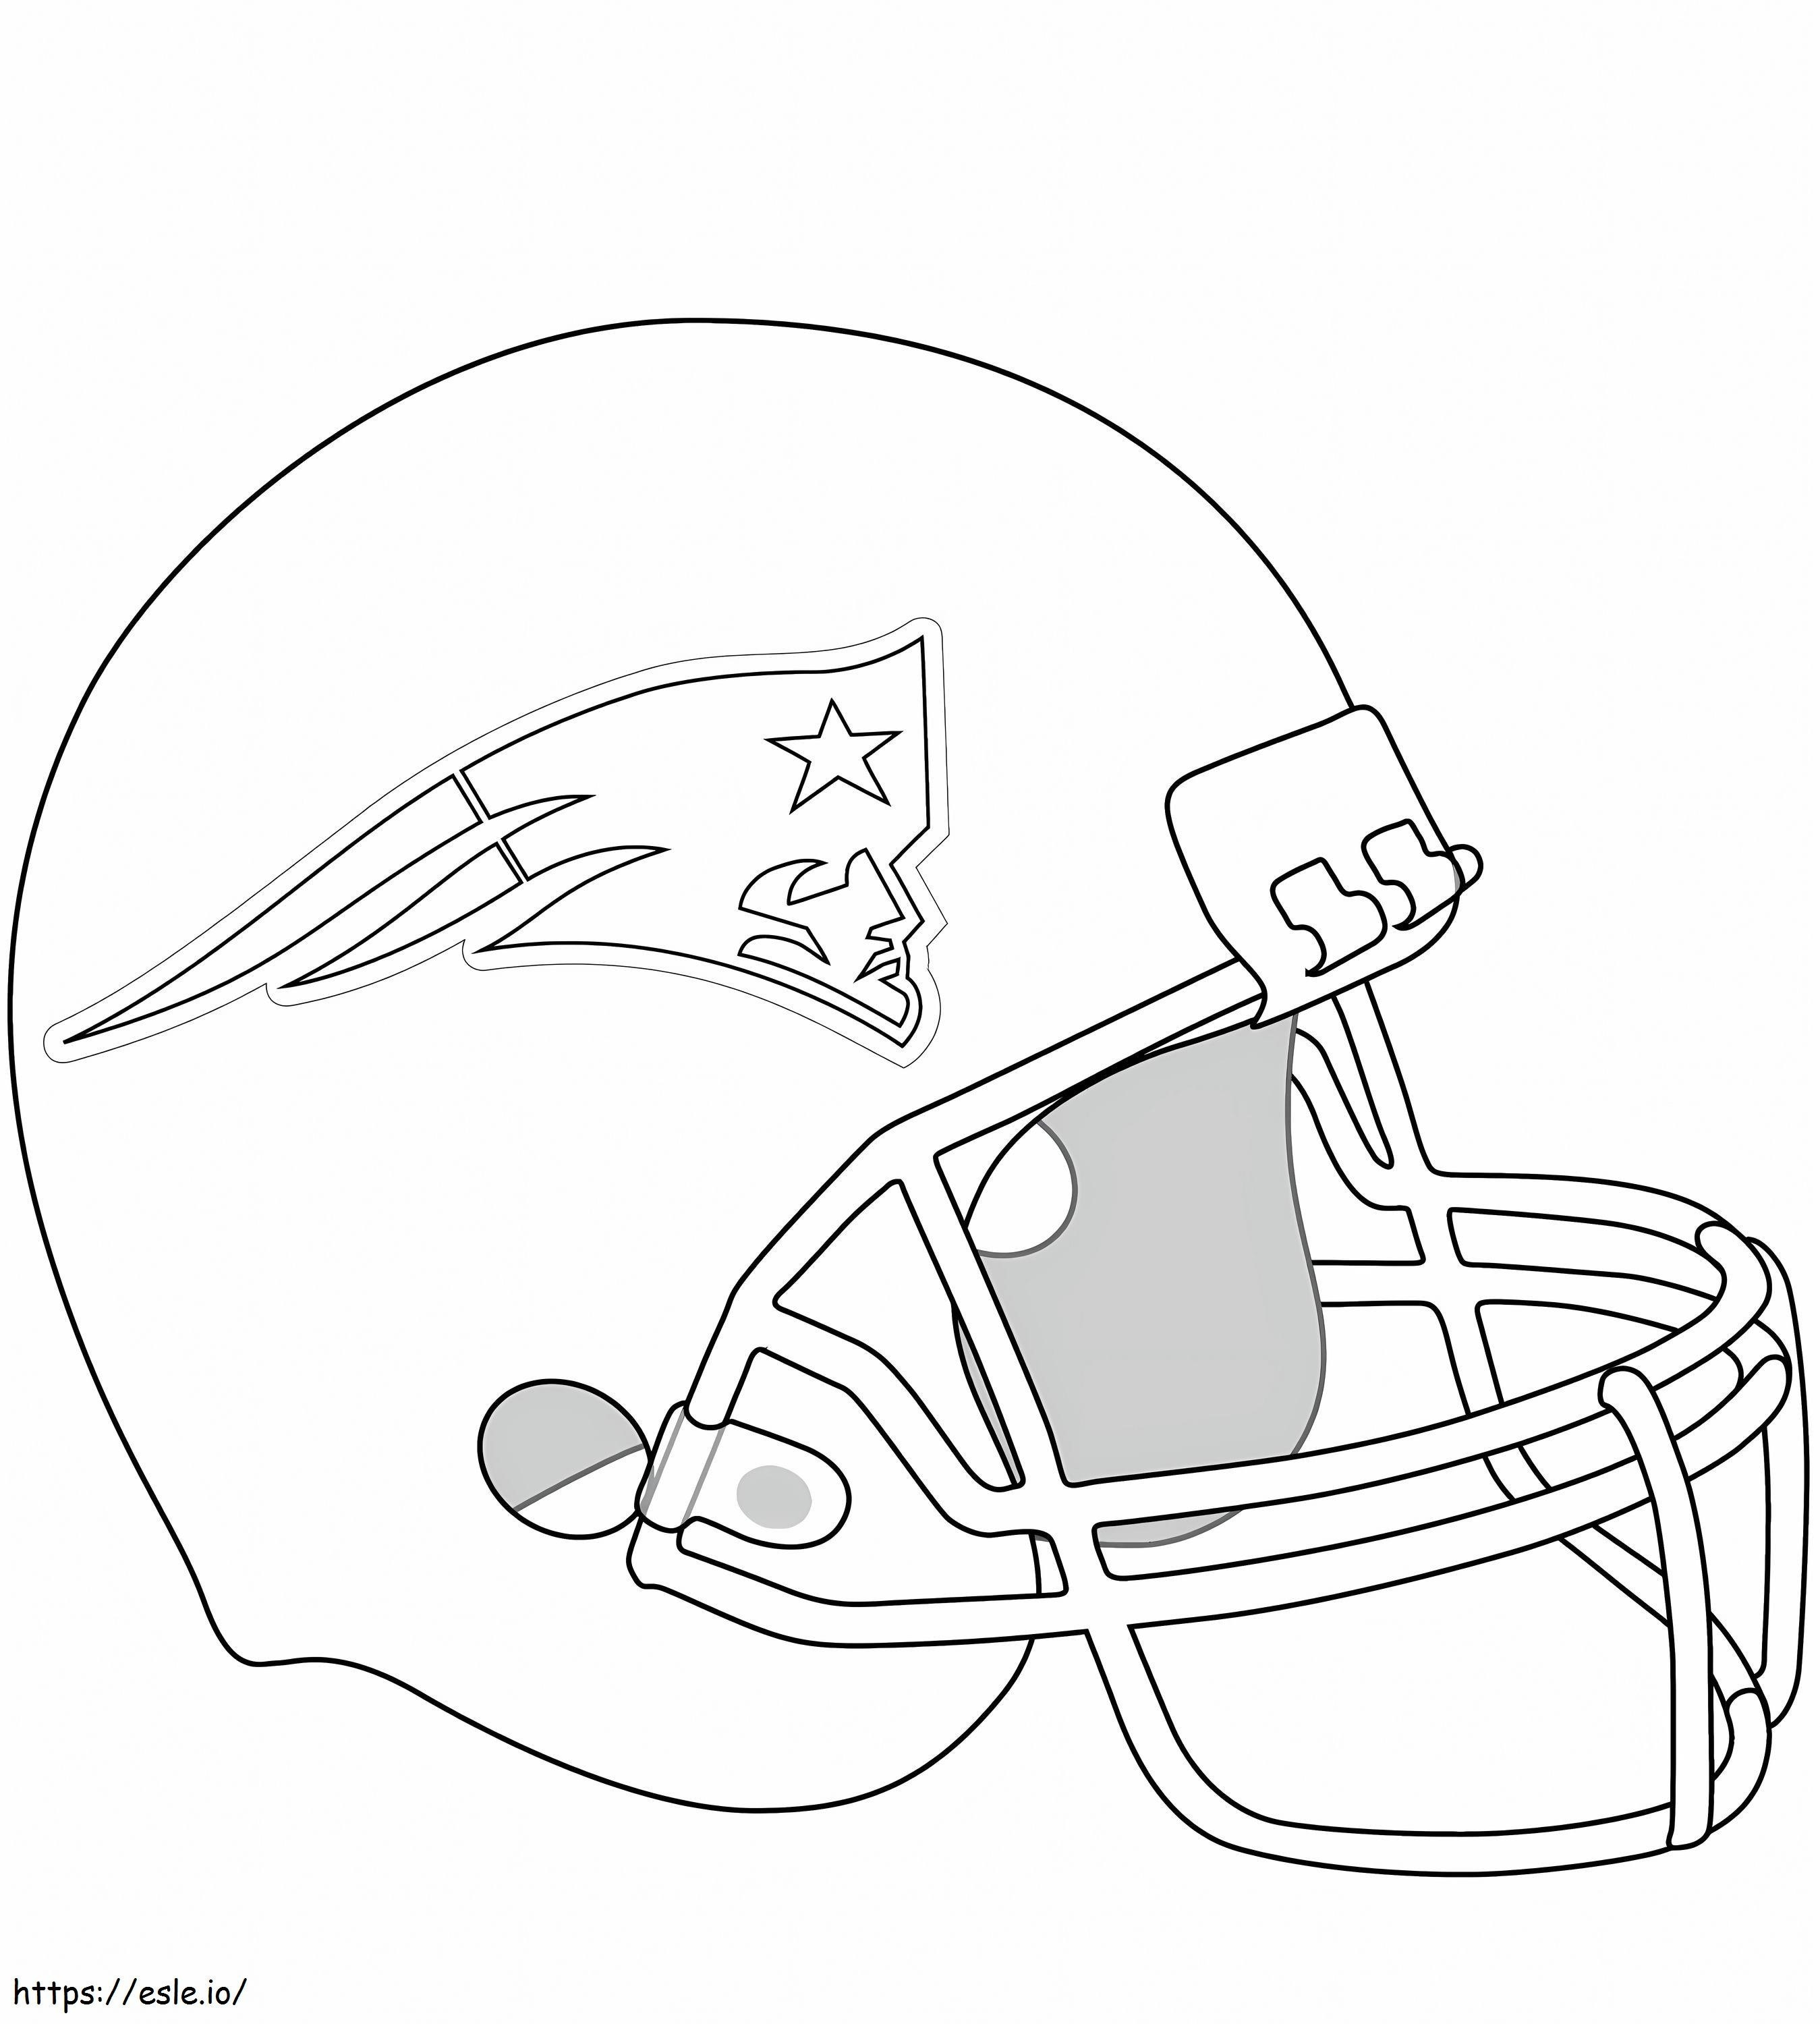 1576917011 New England Patriots-helm kleurplaat kleurplaat